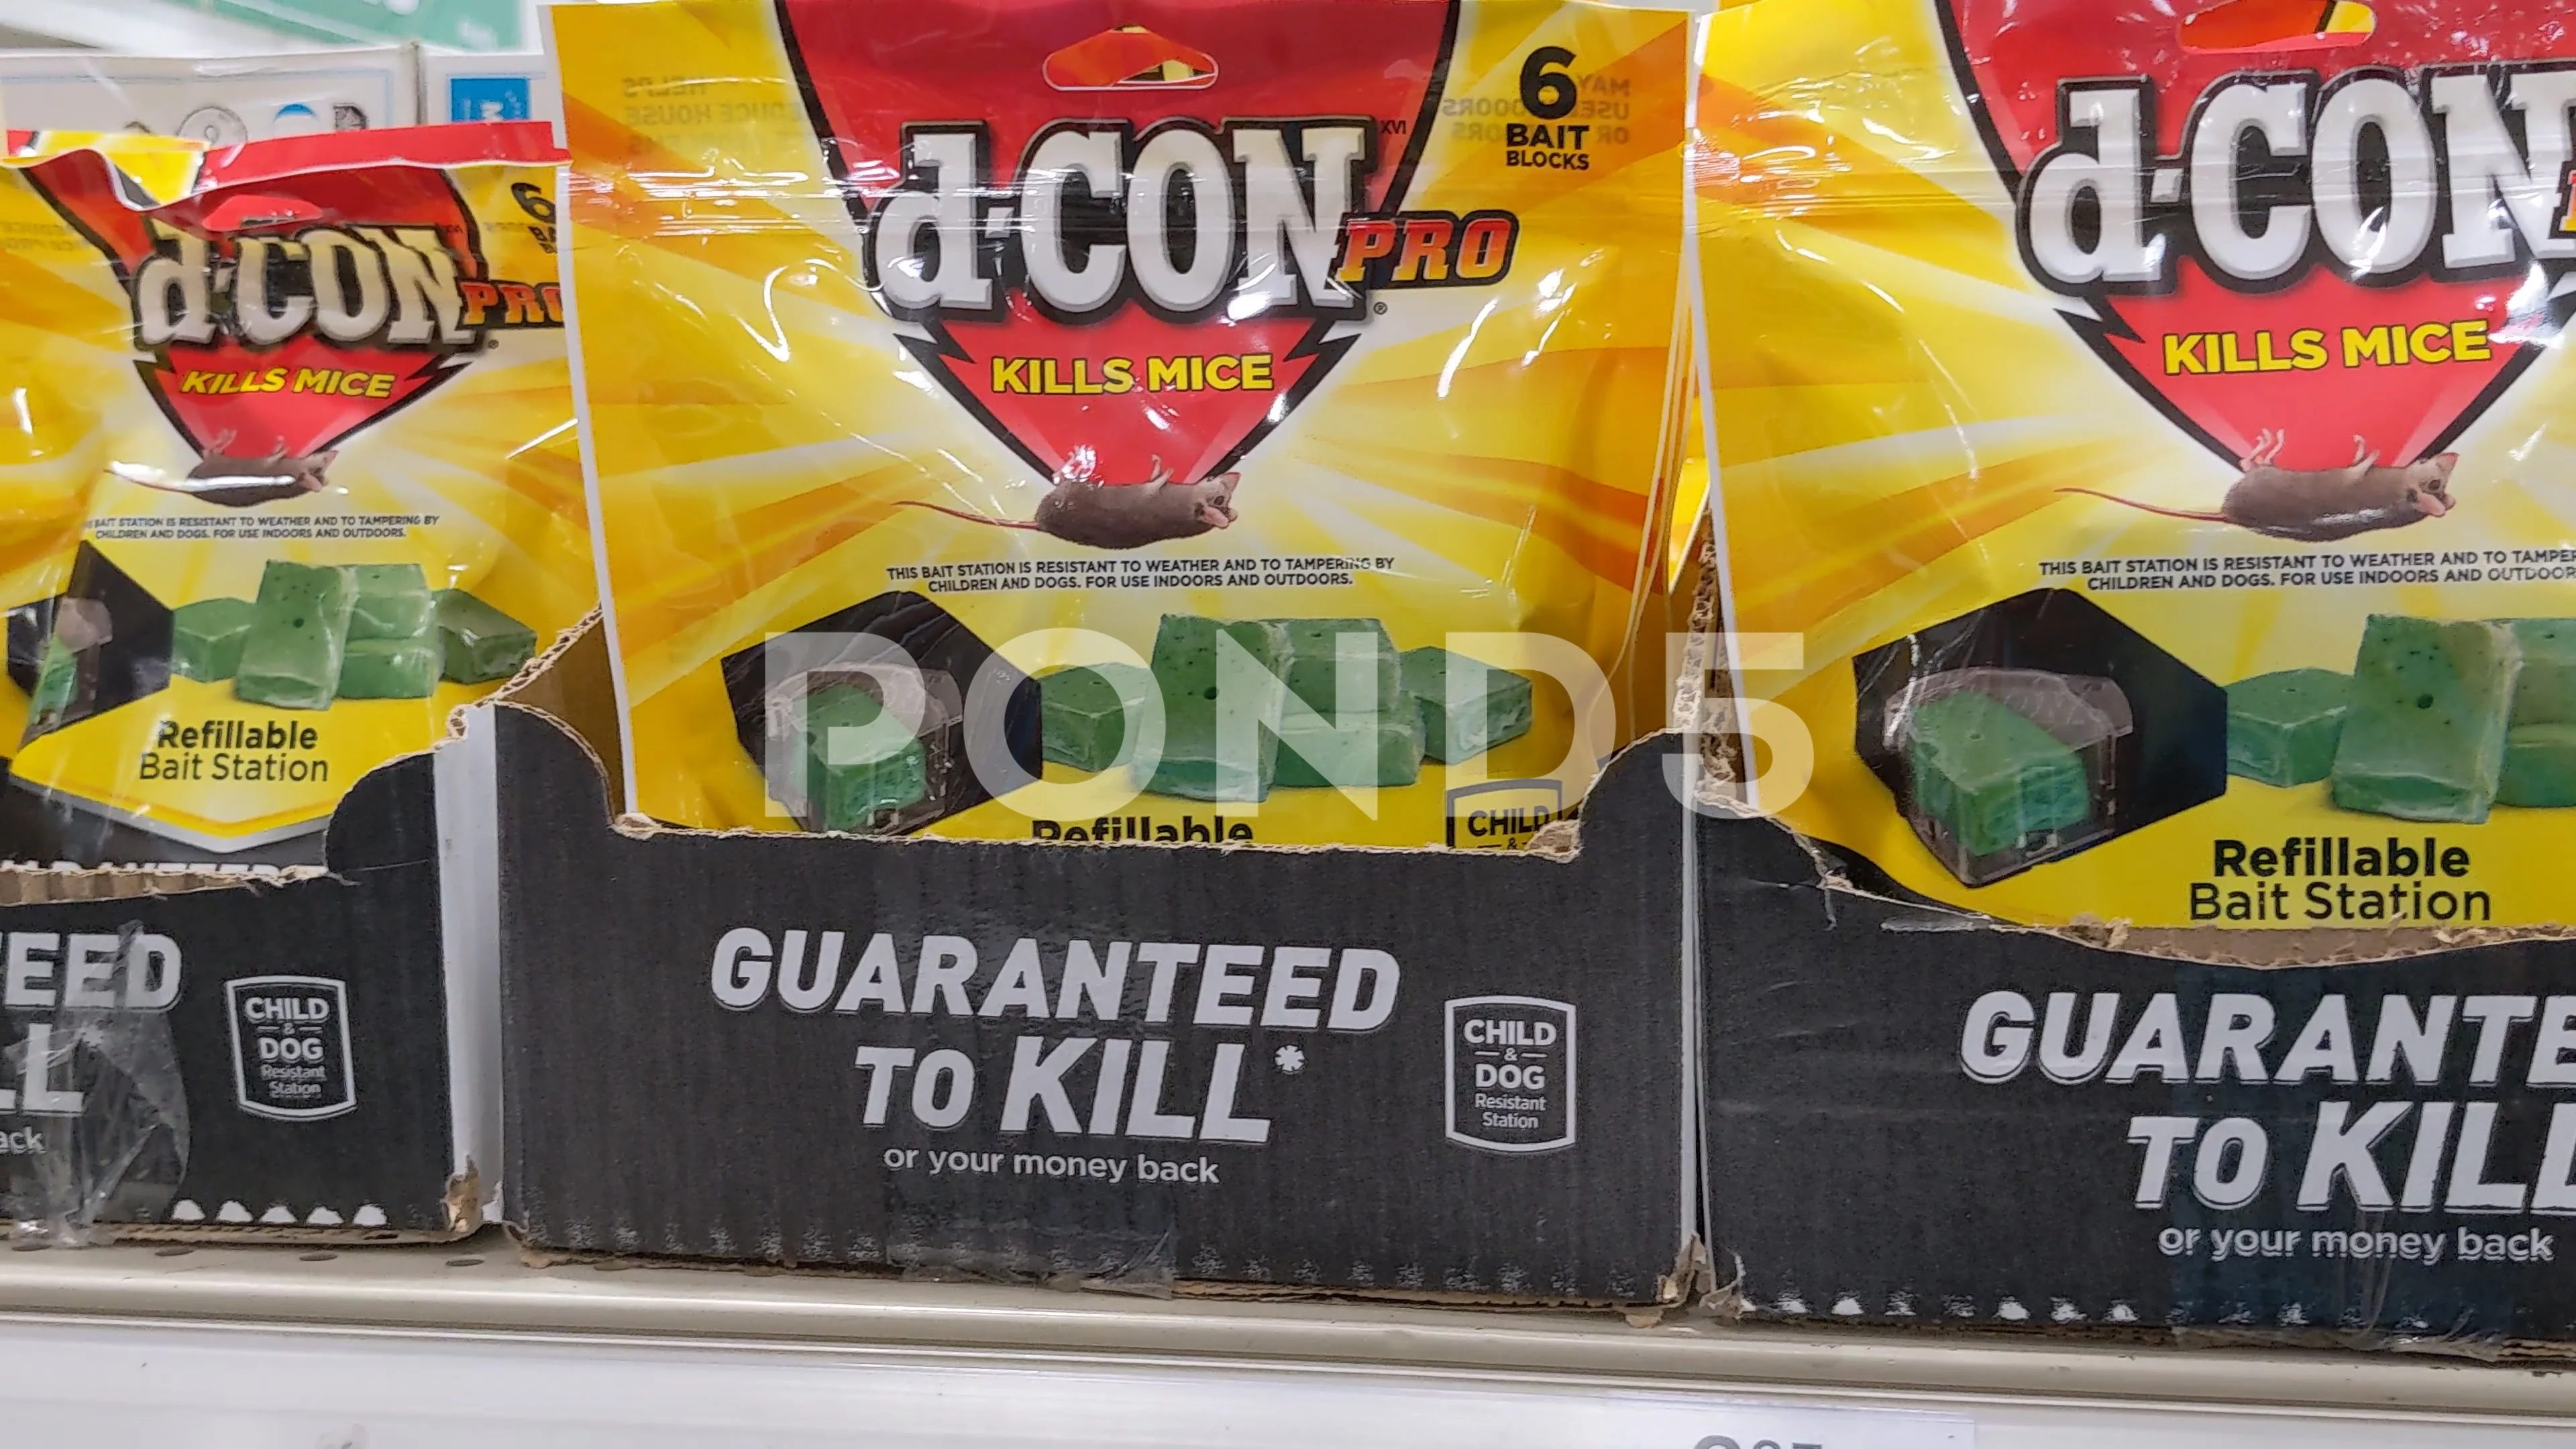 d-CON TV Spot, 'Guaranteed to Kill' 